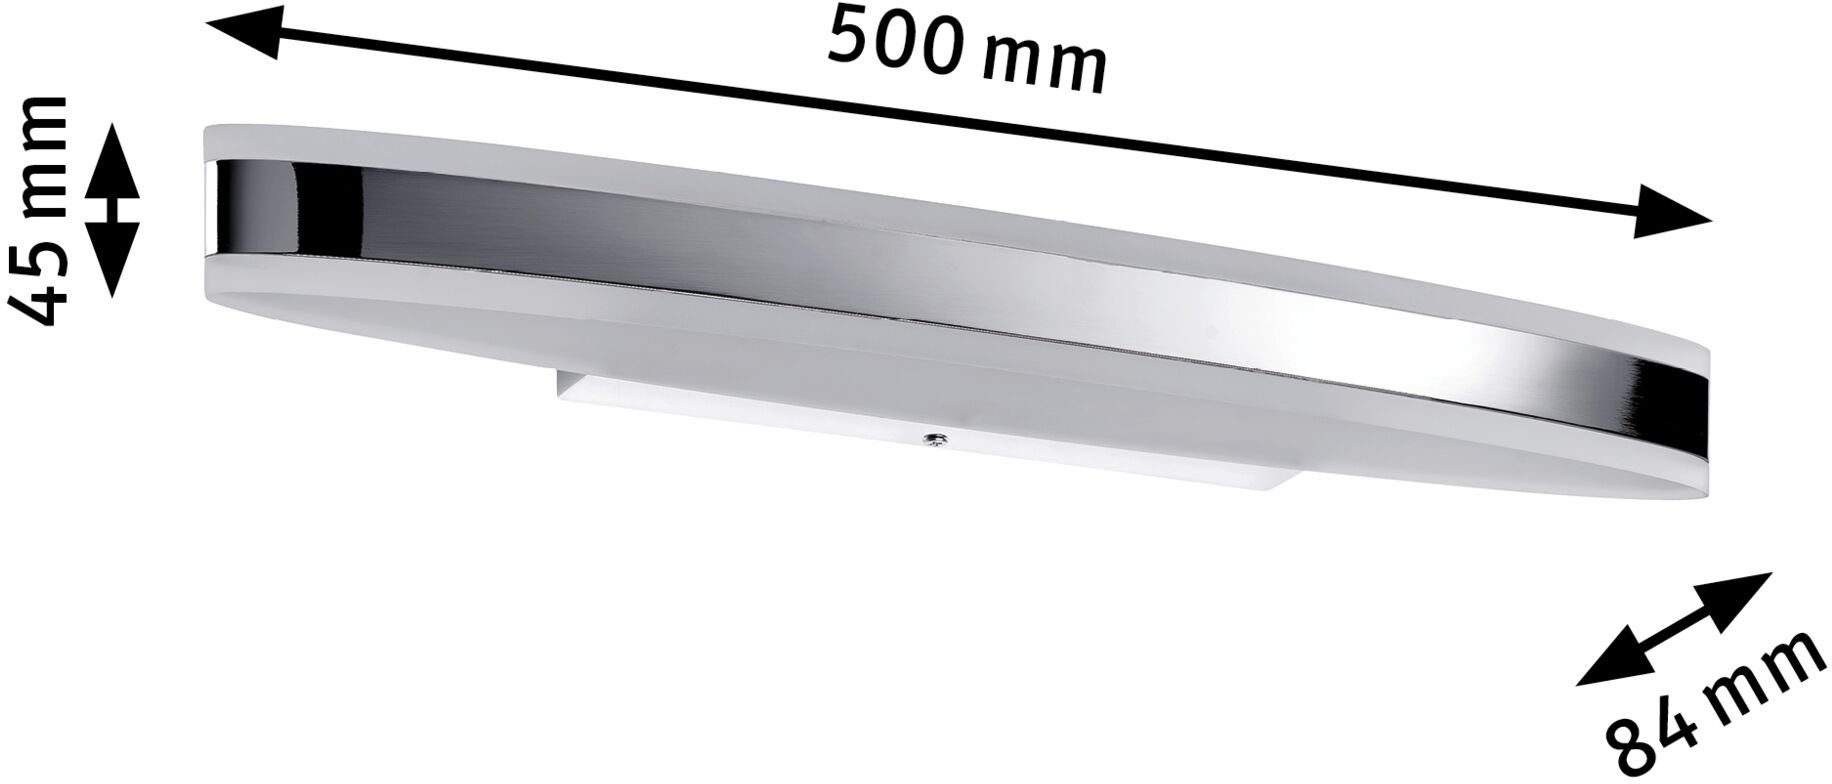 Paulmann Spiegelleuchte Kuma 500mm IP44 Acryl, Metall, integriert, Badezimmerleuchte fest Weiß, Chrom, LED 9W Warmweiß